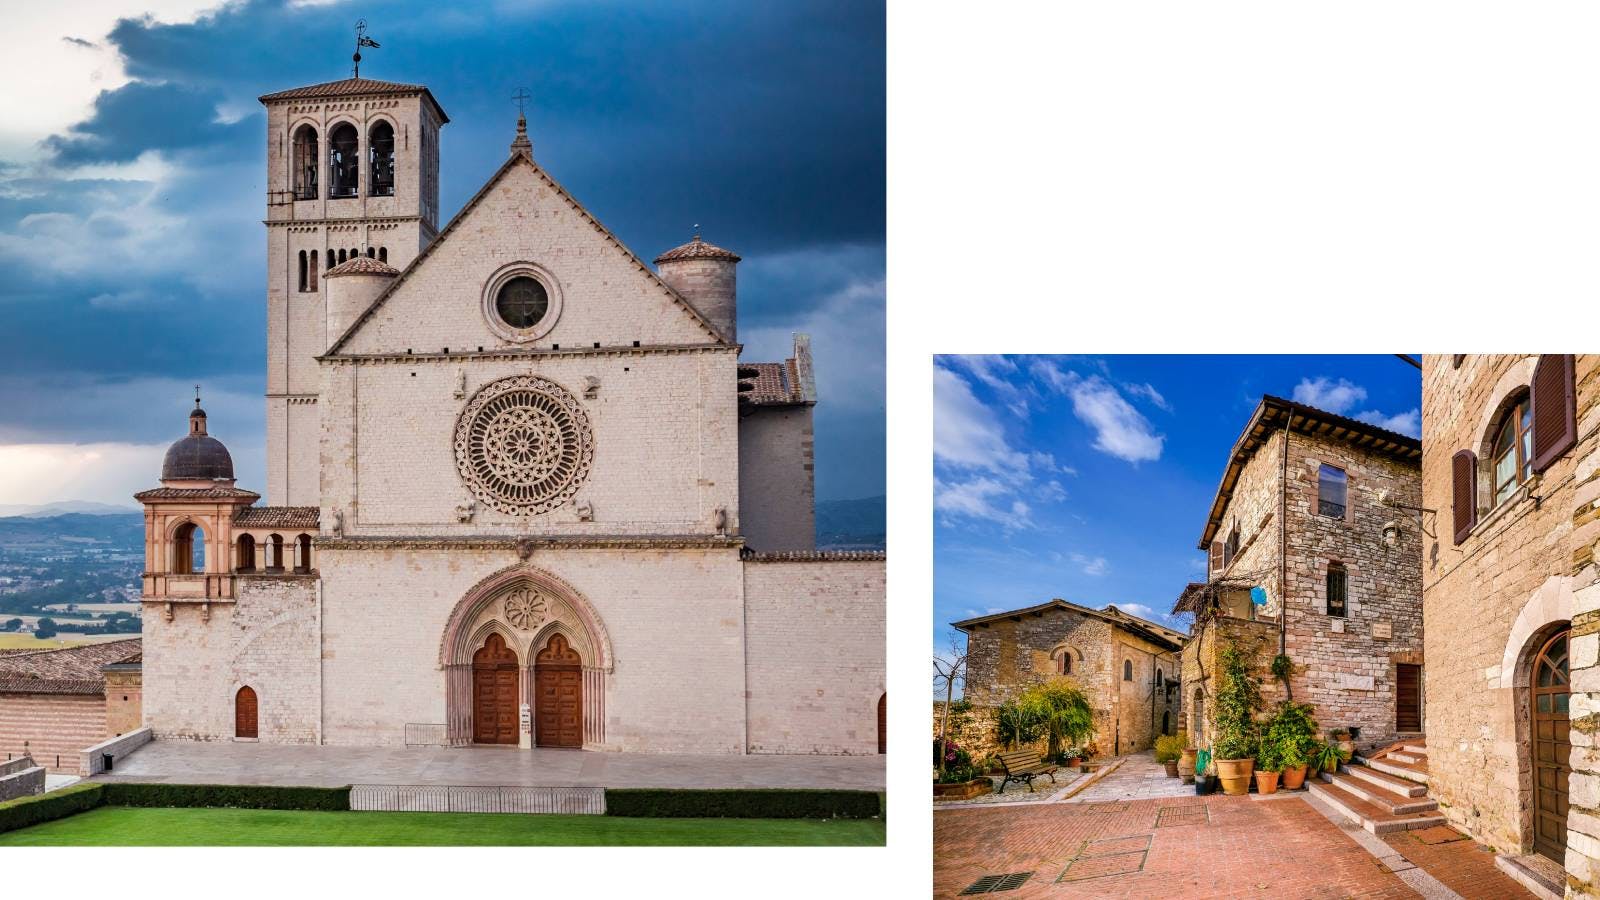 Basilica di San Francesco ad Assisi e via del centro storico di Assisi